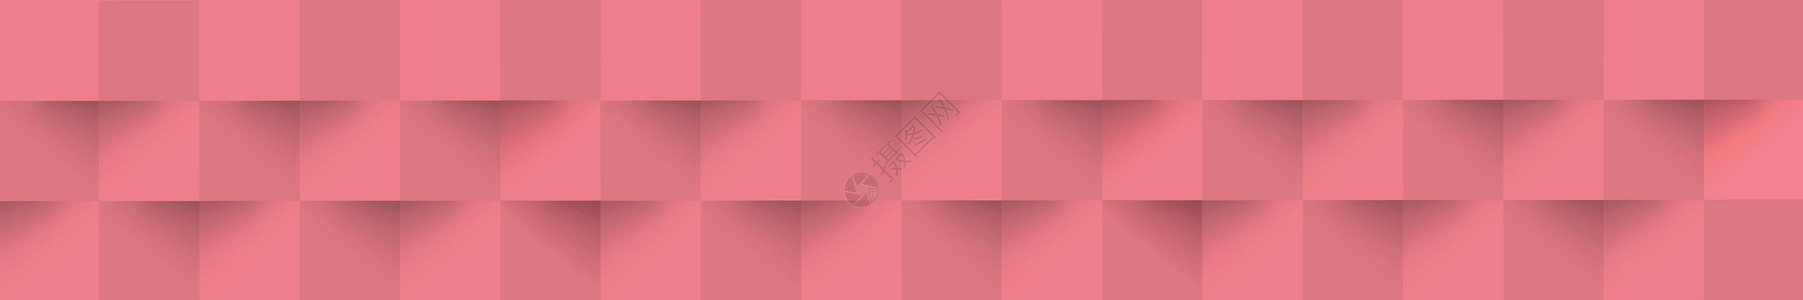 摘要红色背景 网络模板 带阴影的方形  矢量横幅网站房间插图墙纸装饰装饰品几何学风格海报背景图片